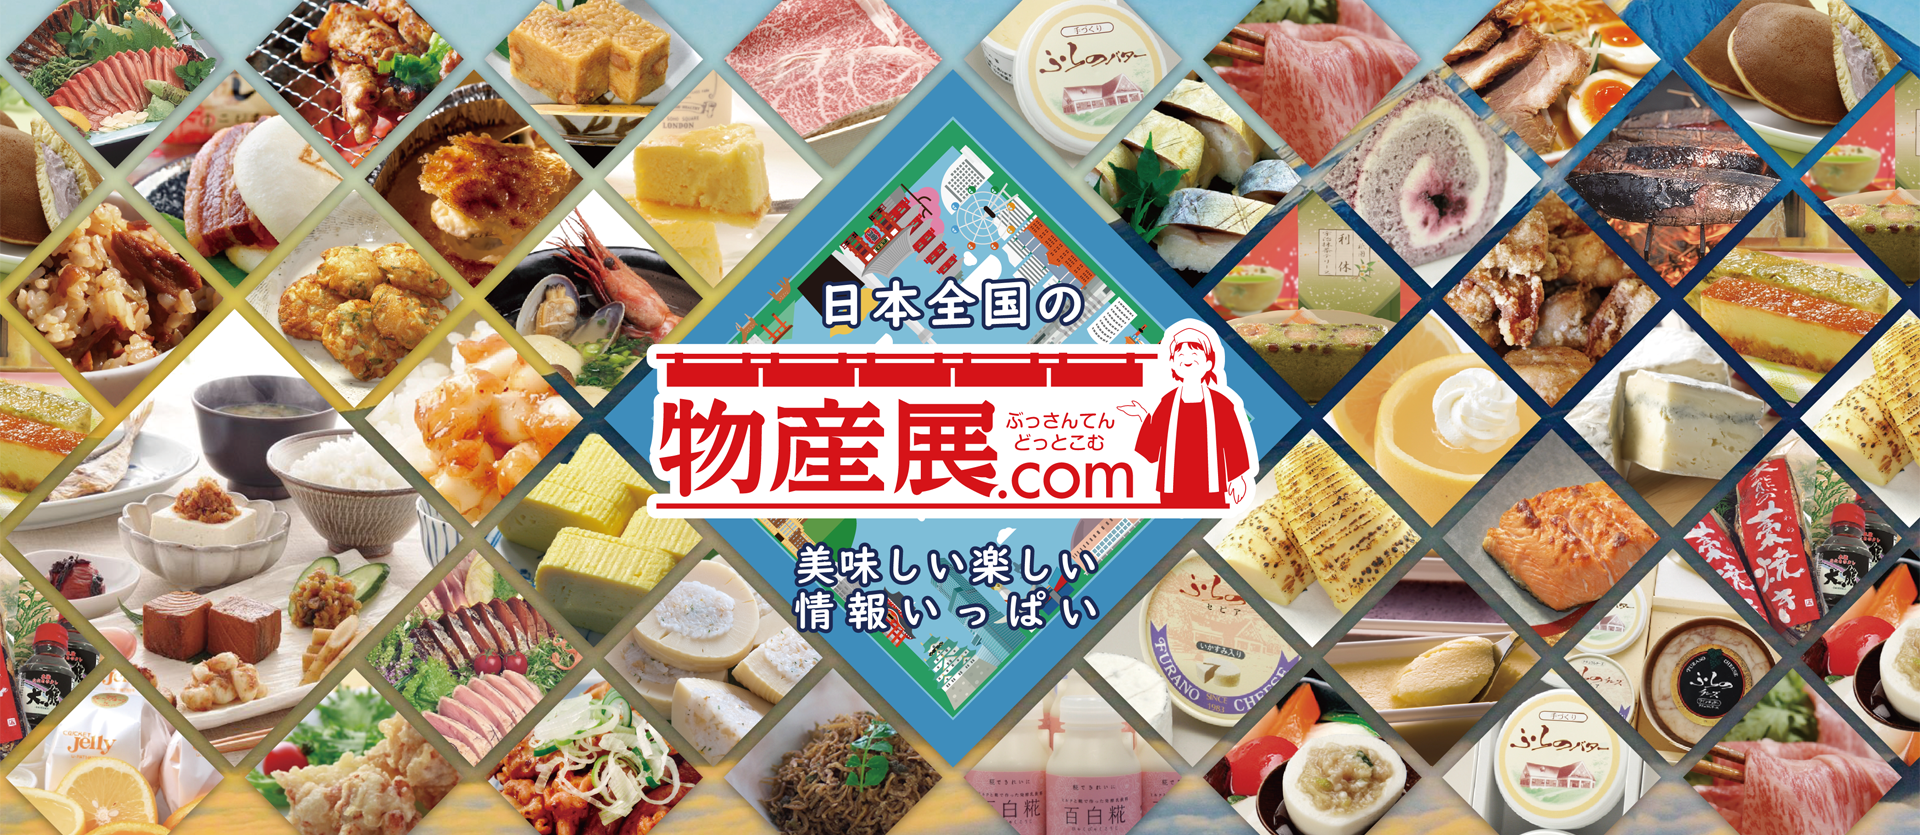 日本全国の物産展情報をお届けする 物産展 Com は美味しい楽しい物産展 イベント フェス情報がいっぱい